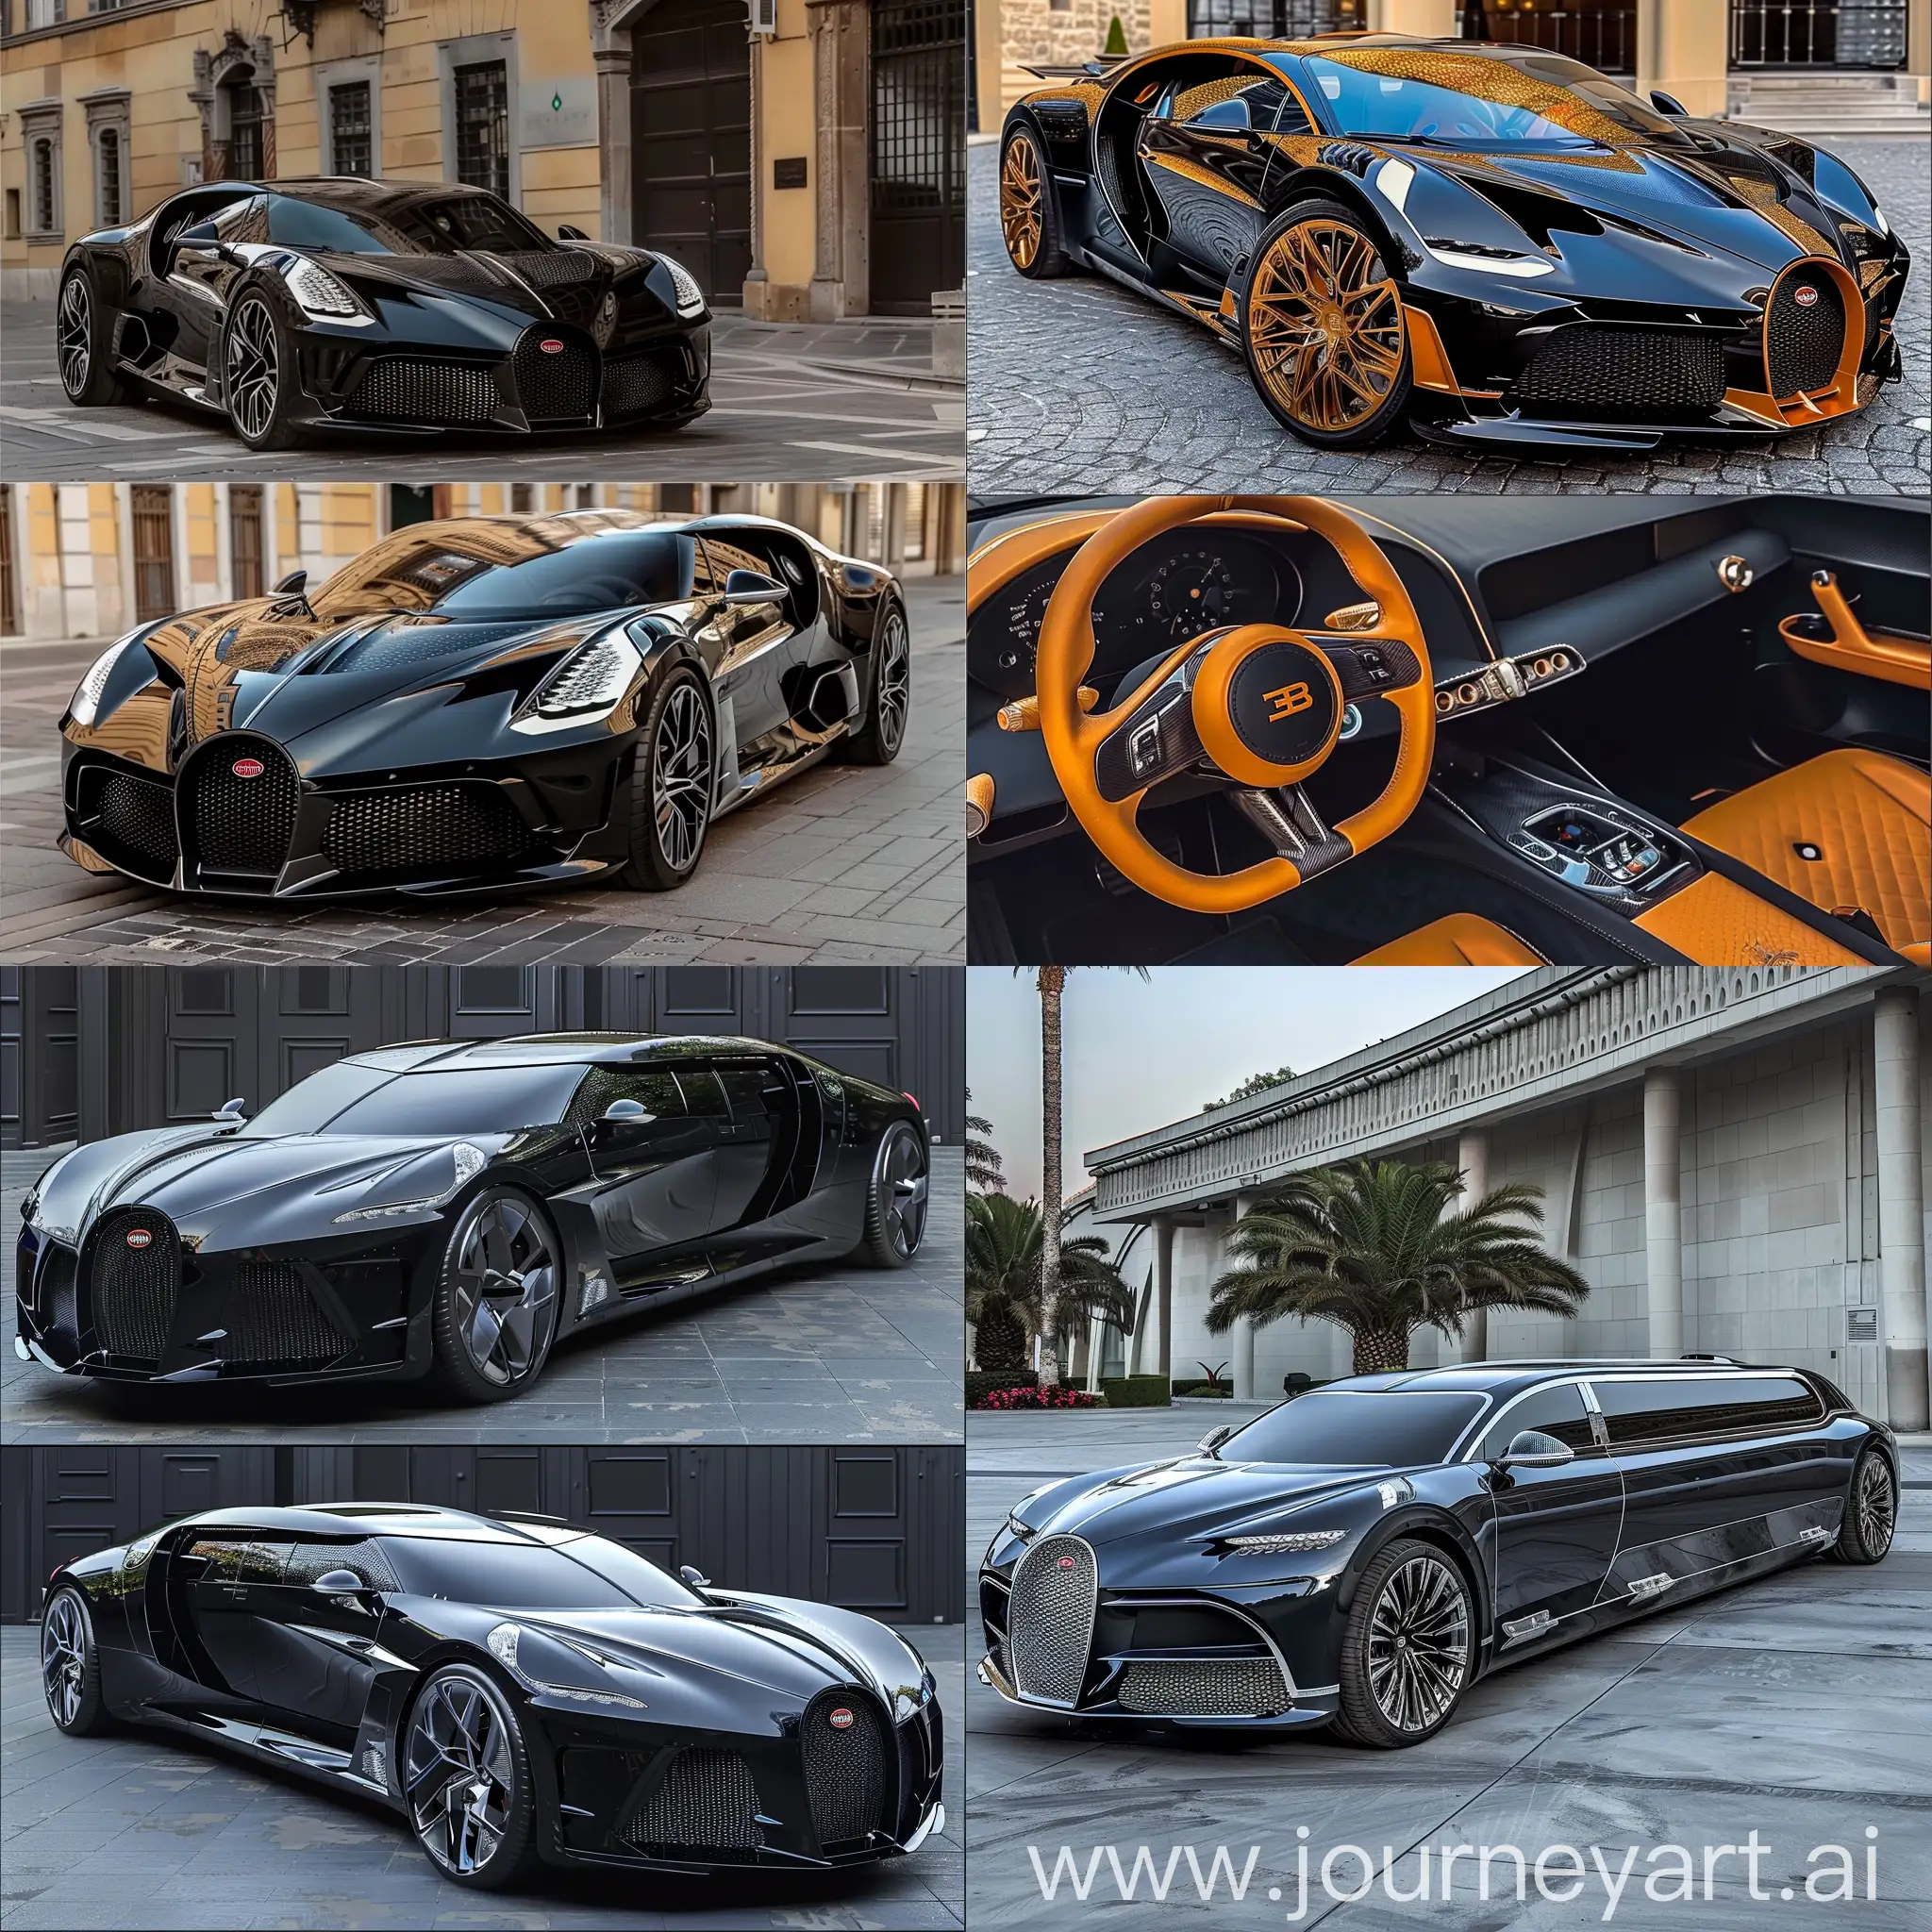 Luxurious-Bugatti-Divo-Limousine-with-V6-Engine-and-Unique-Design